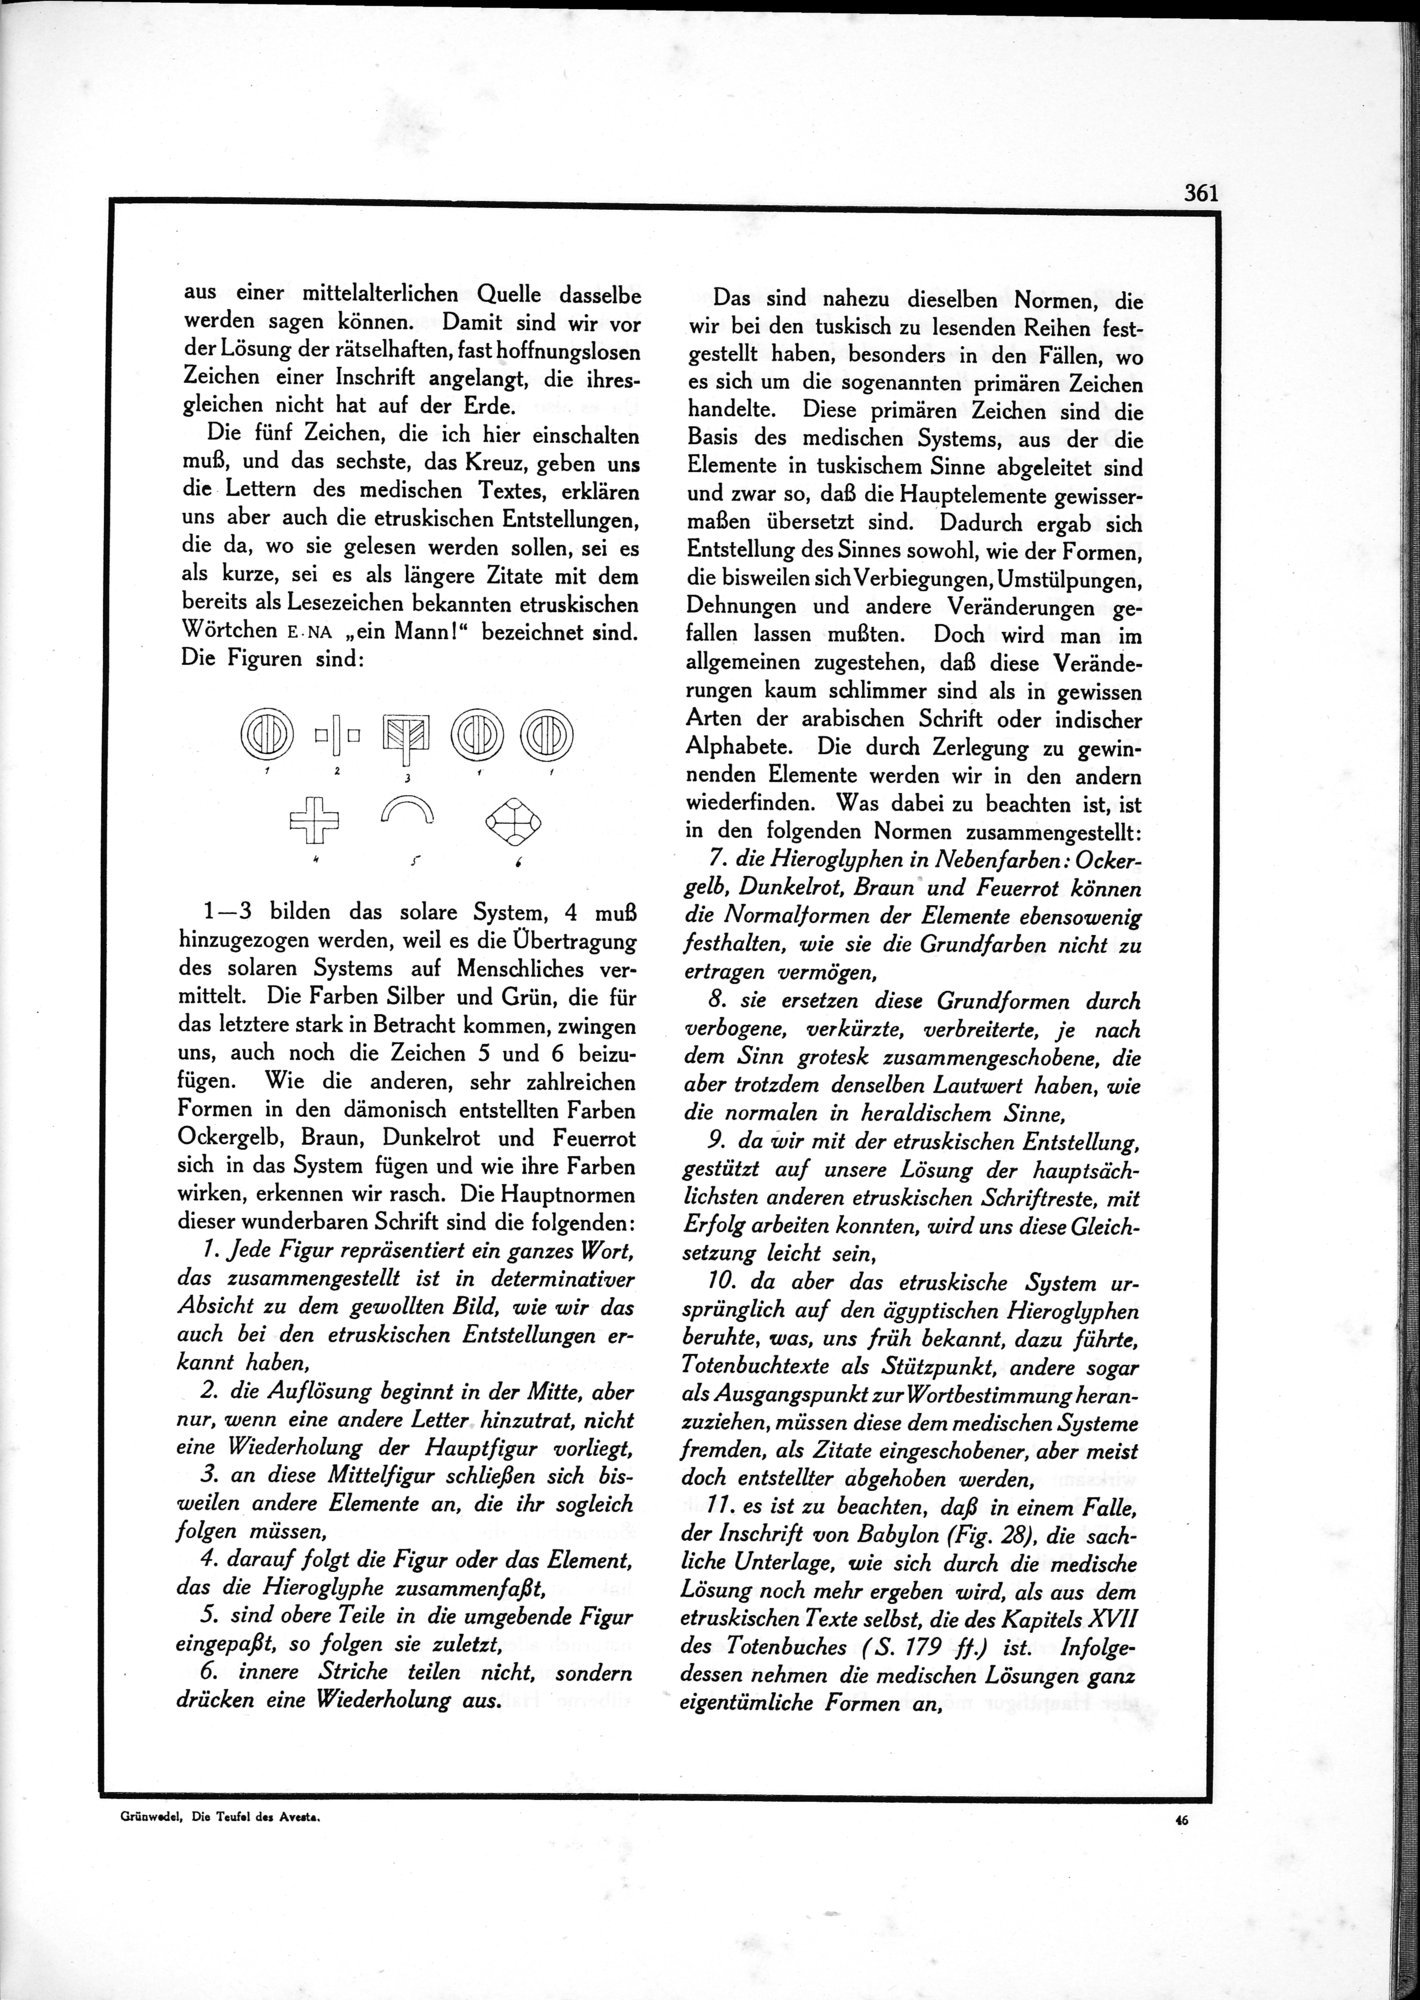 Die Teufel des Avesta und Ihre Beziehungen zur Ikonographie des Buddhismus Zentral-Asiens : vol.1 / Page 365 (Grayscale High Resolution Image)